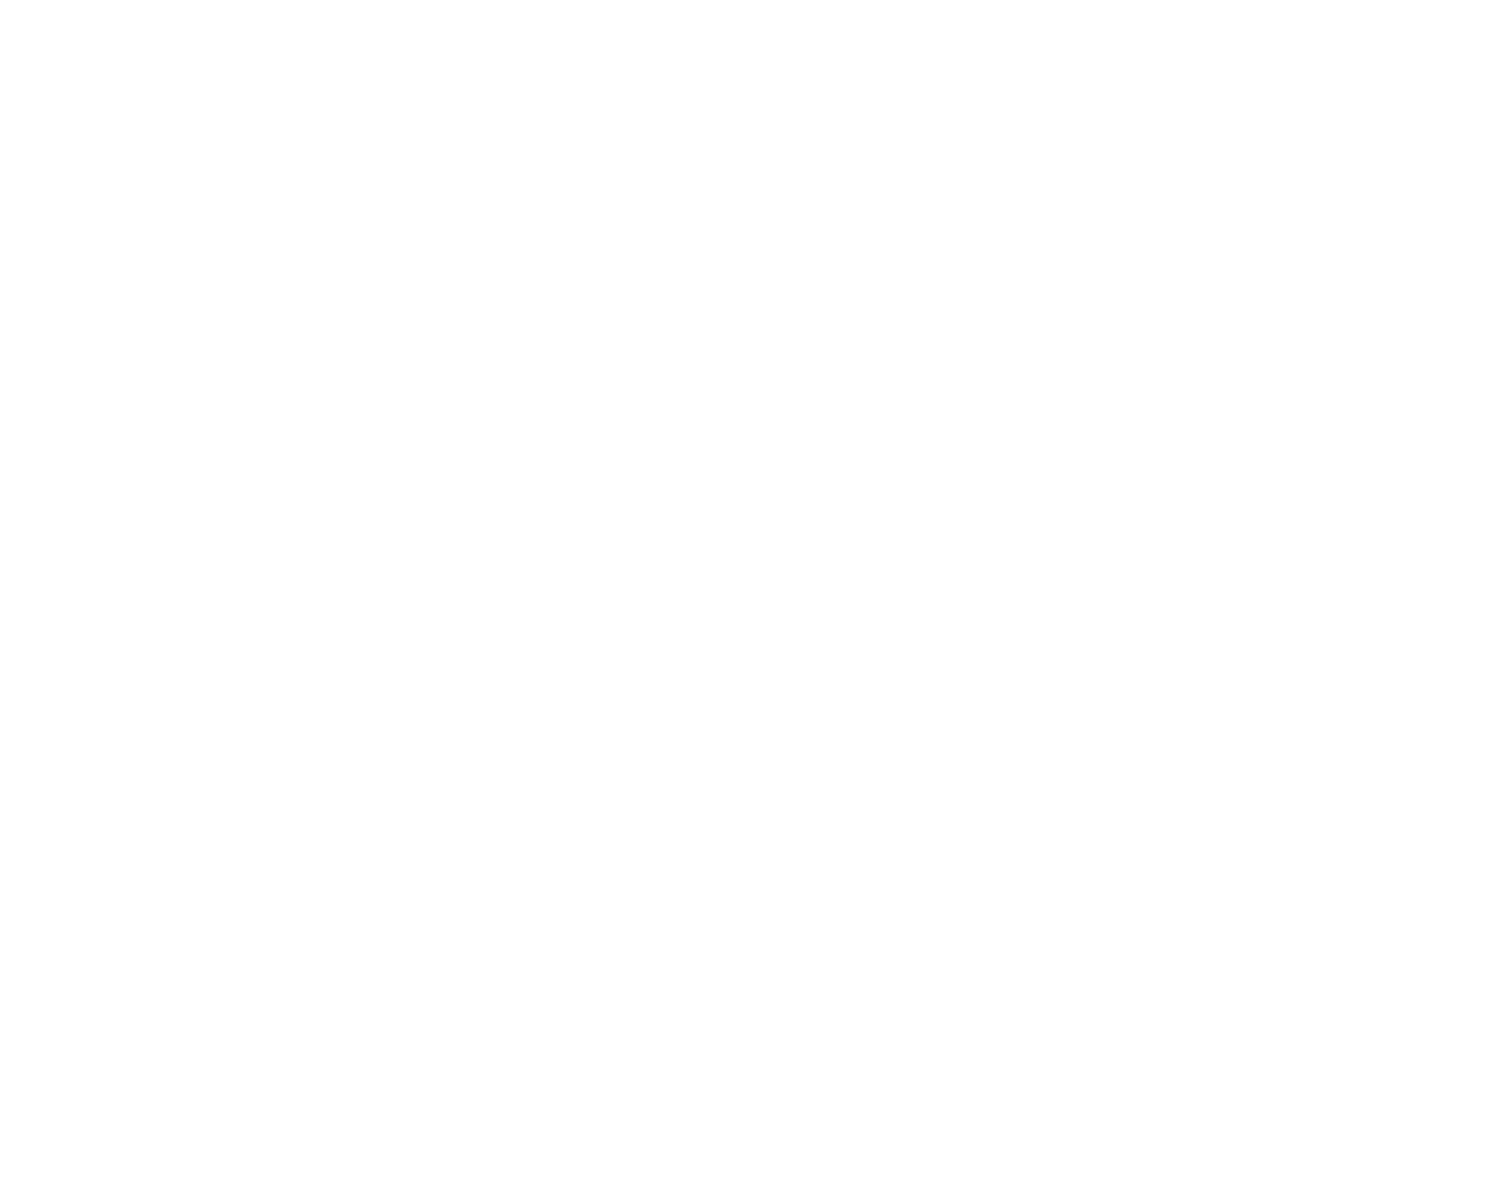 studio X presents